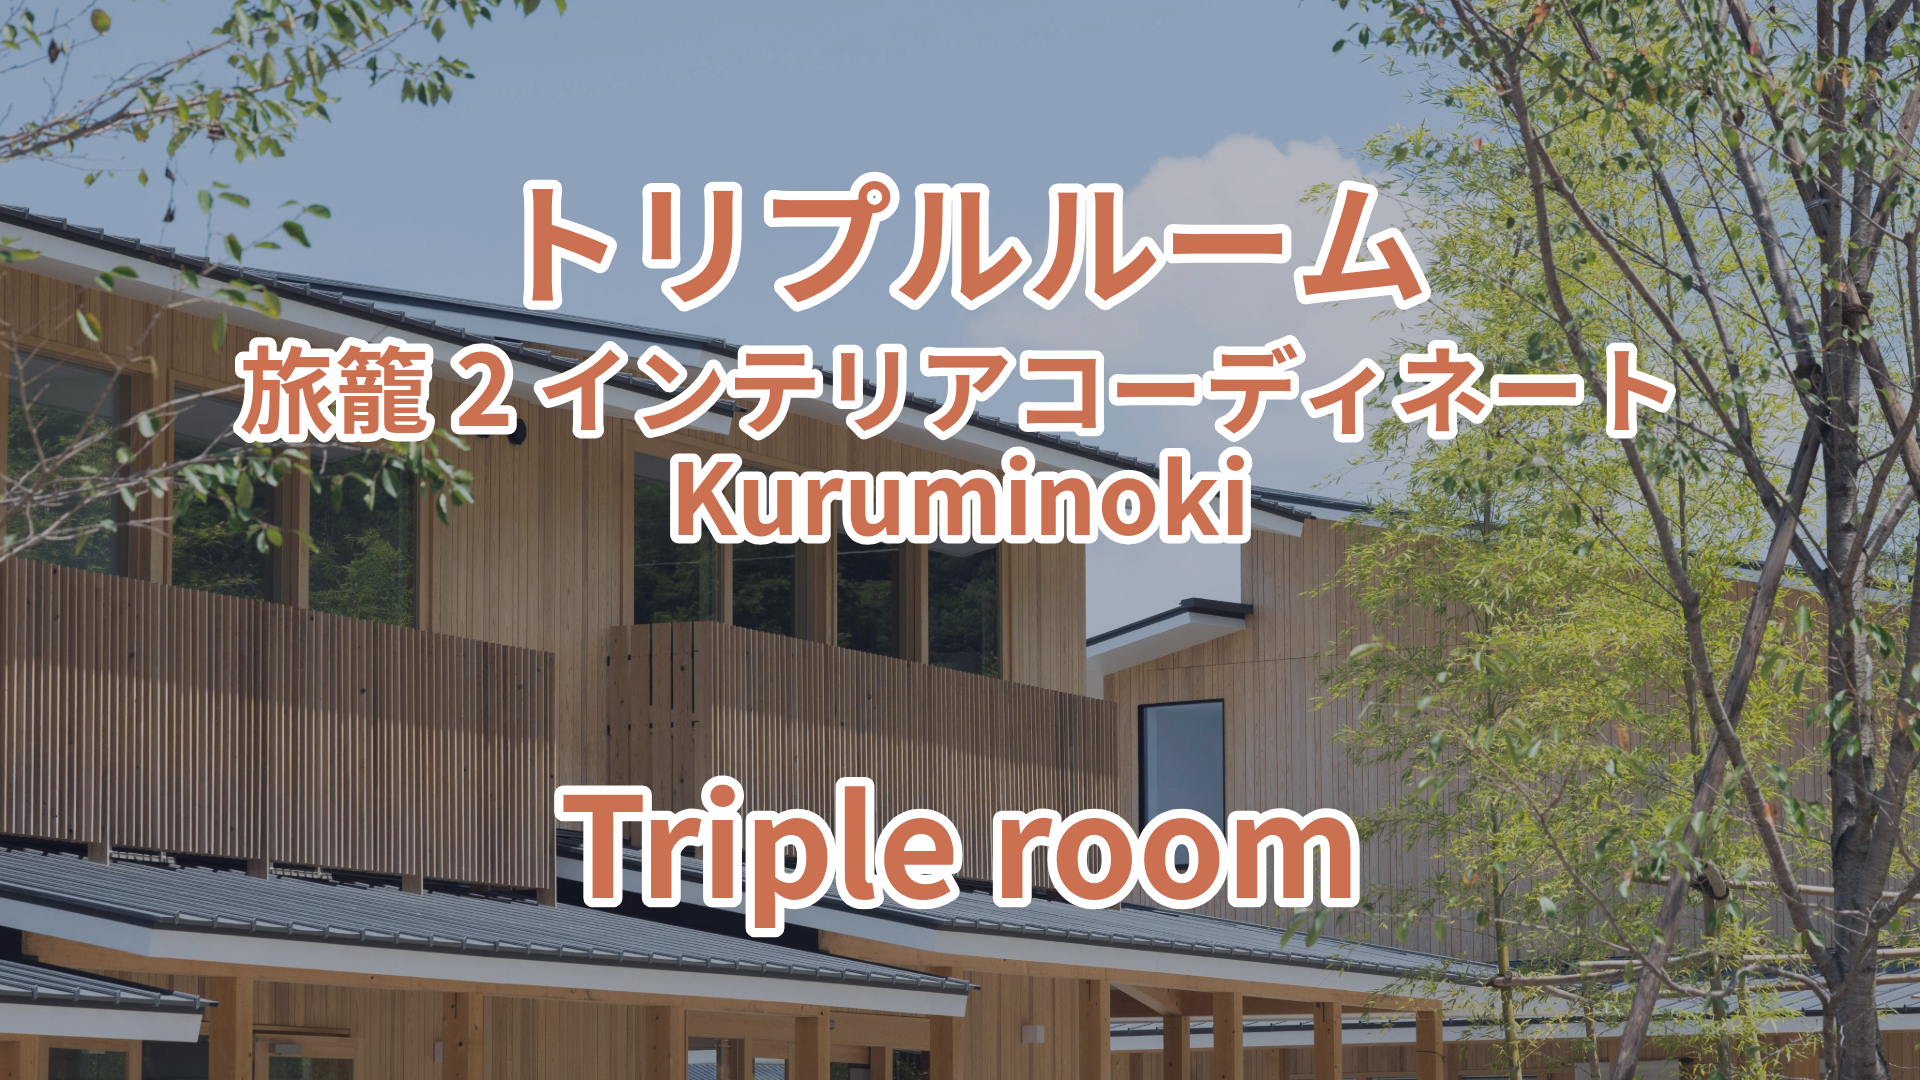 トリプルルーム 旅籠2 インテリアコーディネート Kuruminoki